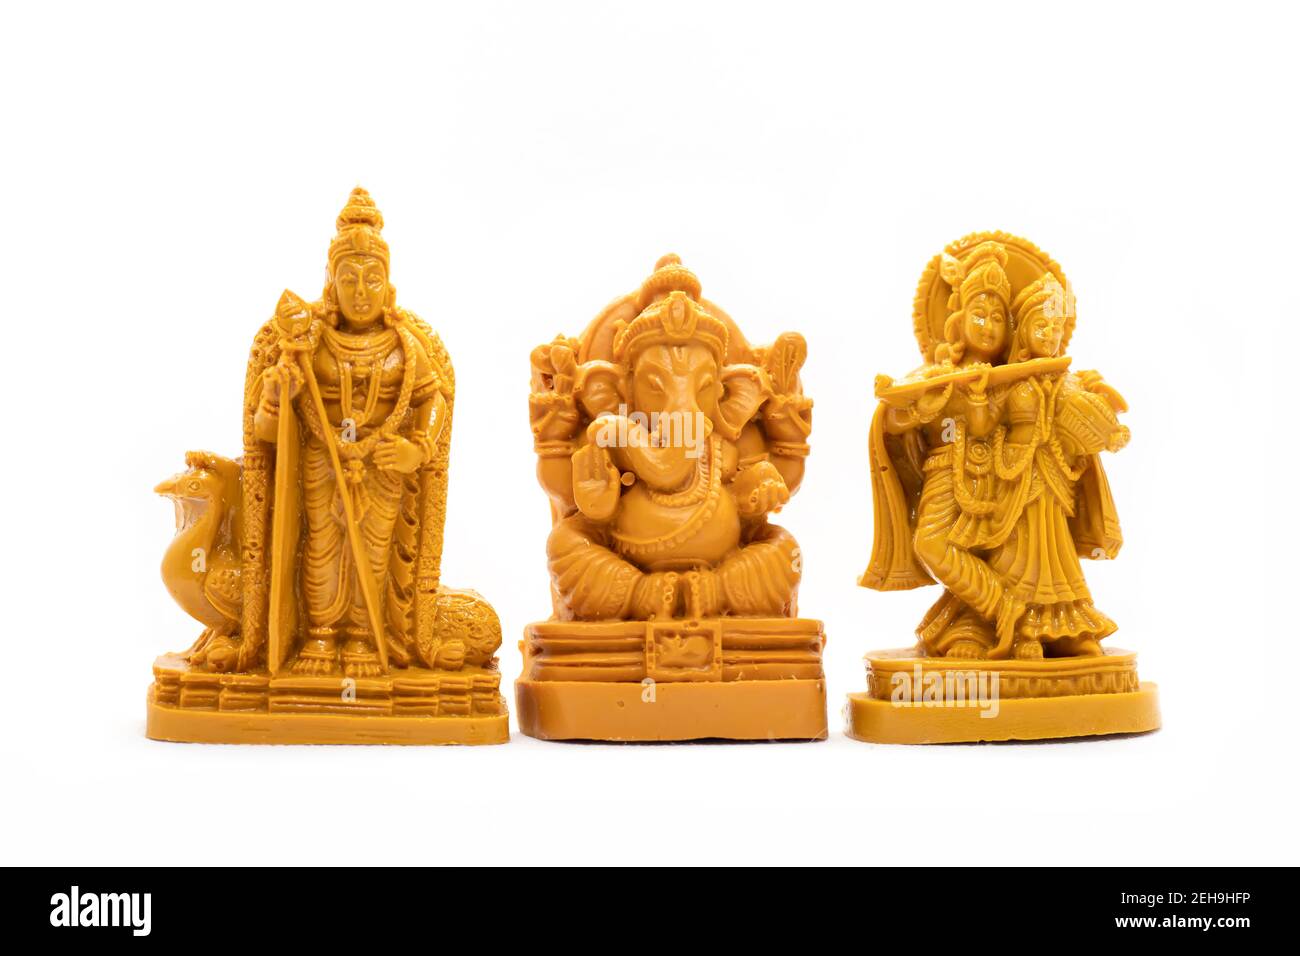 L'idolo in legno intagliato a mano di Lord Murugan con Radha Krishna E Ganesha su sfondo bianco Foto Stock